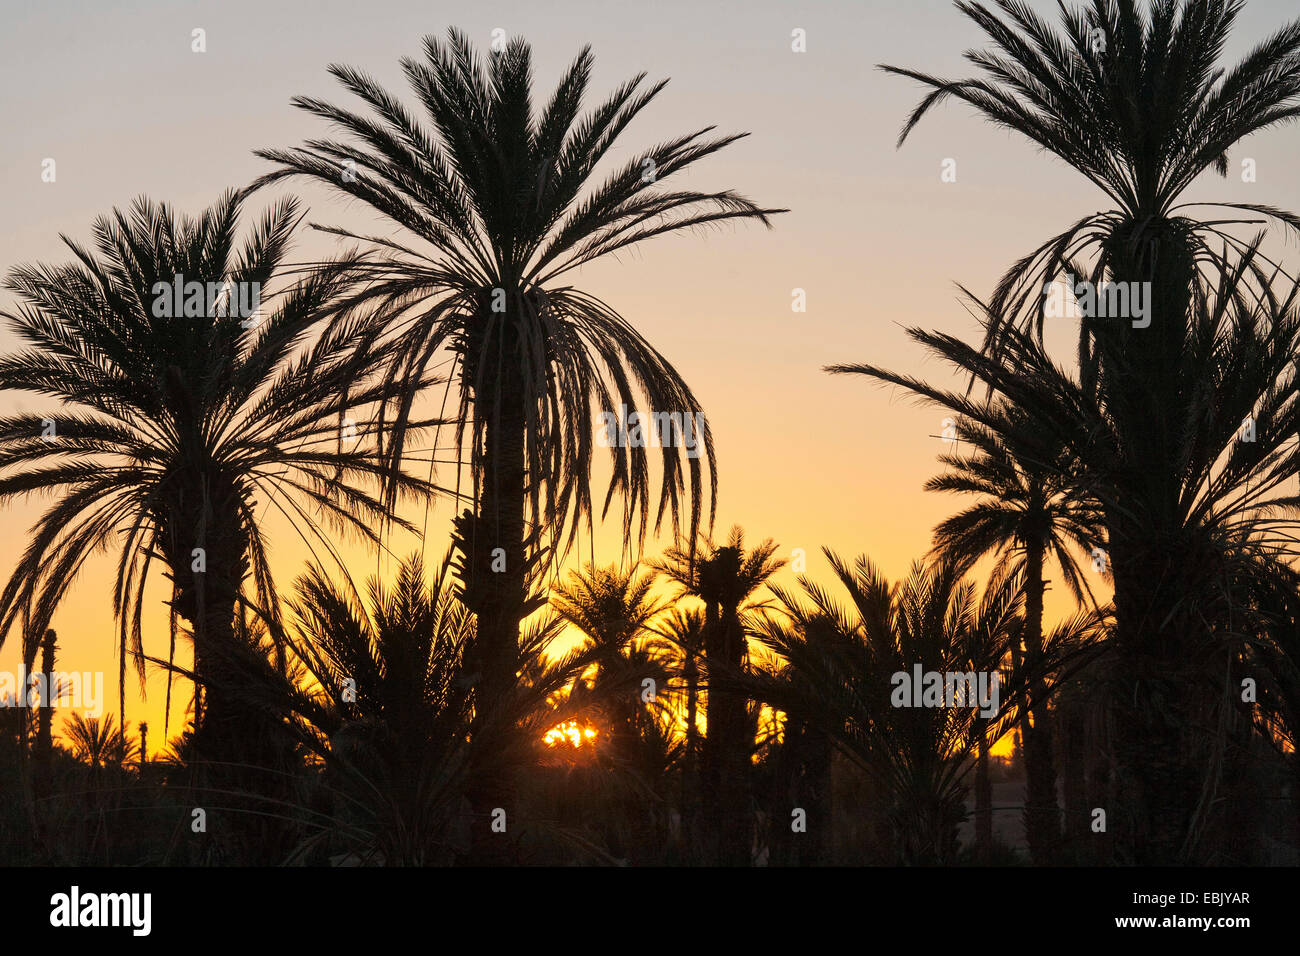 date palm (Phoenix dactylifera), palm grove at sunrise, Morocco, Souss-Massa-DaraÔ Stock Photo